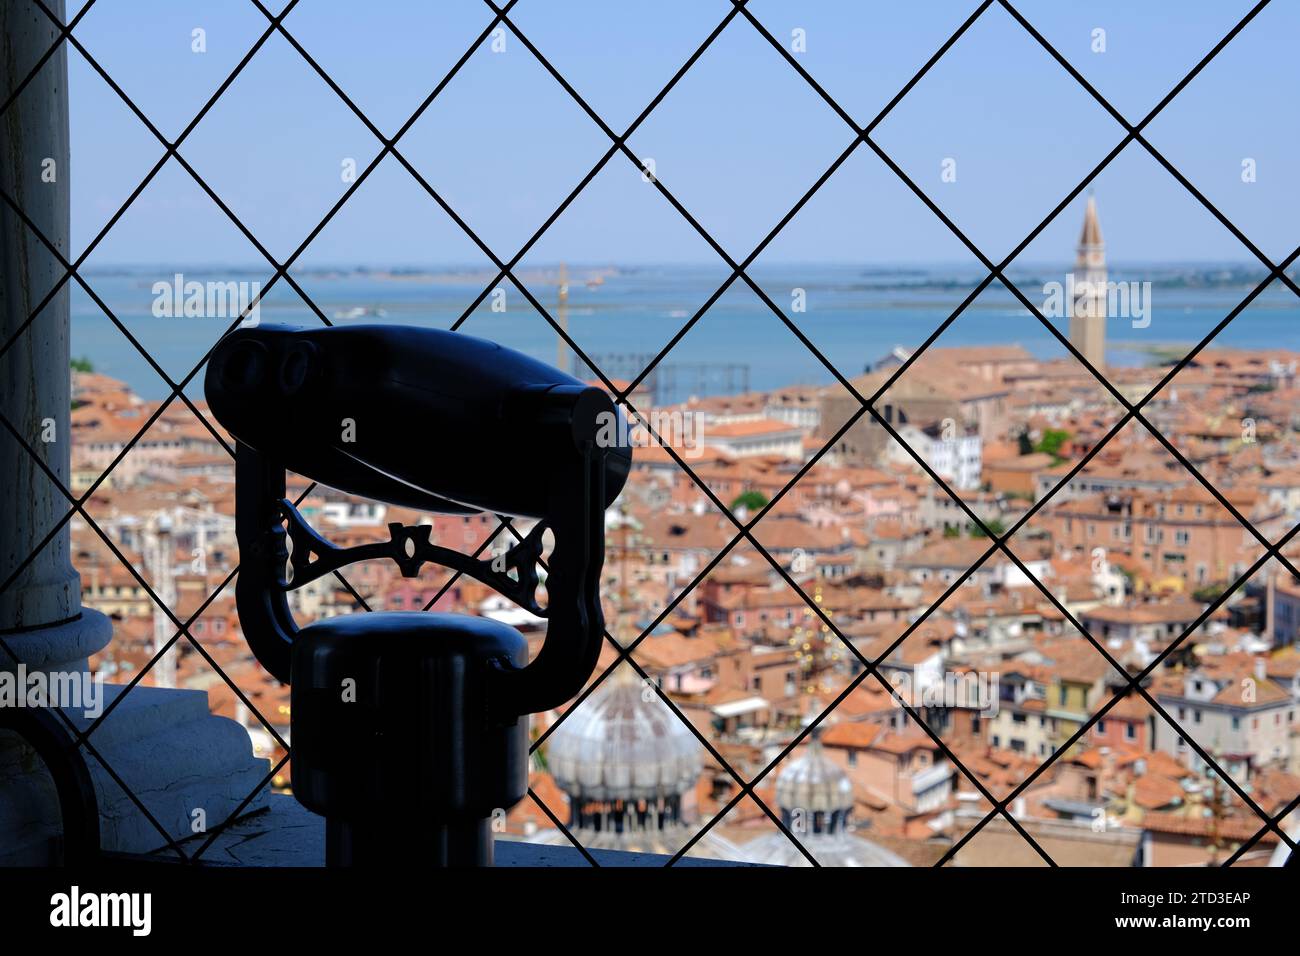 Venise Italie - vue depuis la tour cathédrale Campanile St Marc - télescope sur la plate-forme d'observation Banque D'Images